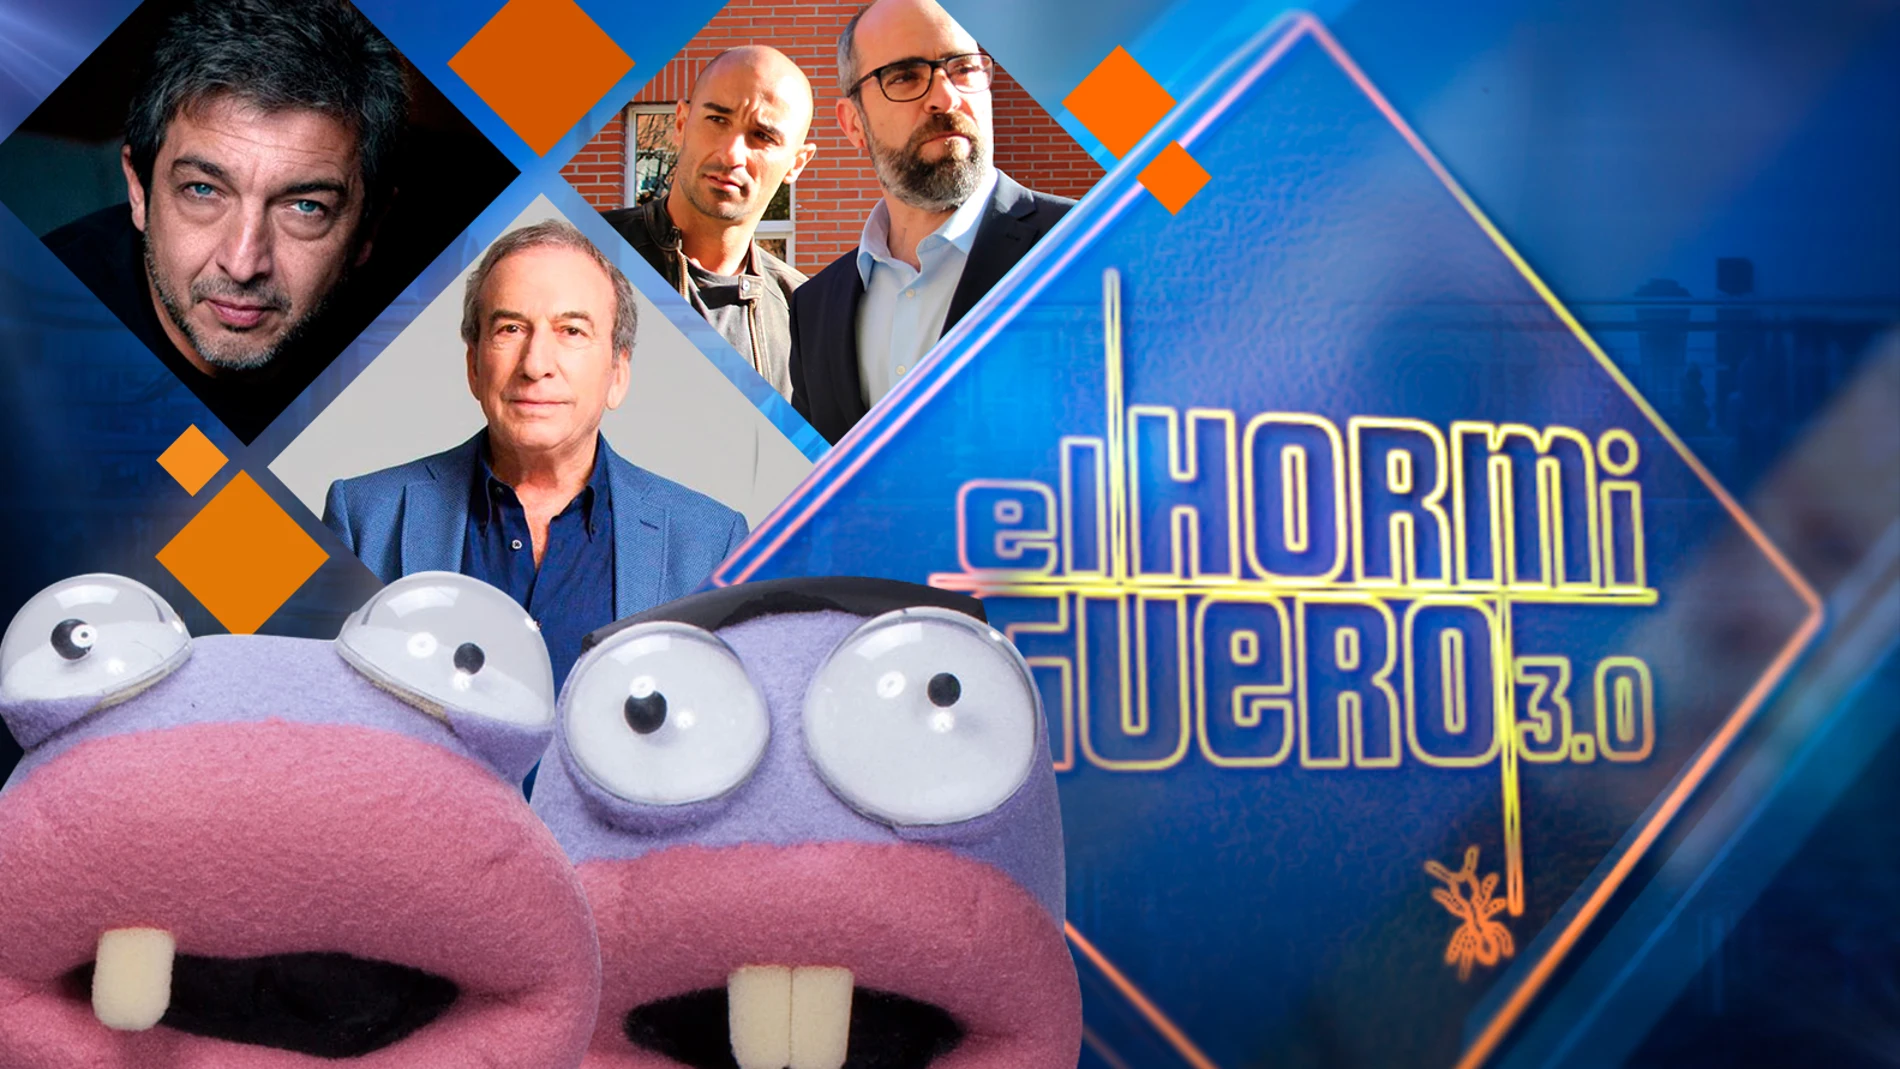 Los actores Ricardo Darín, Luis Tosar y Alain Hernández y el cantante José Luis Perales, amenizan la Semana Santa en 'El Hormiguero 3.0'